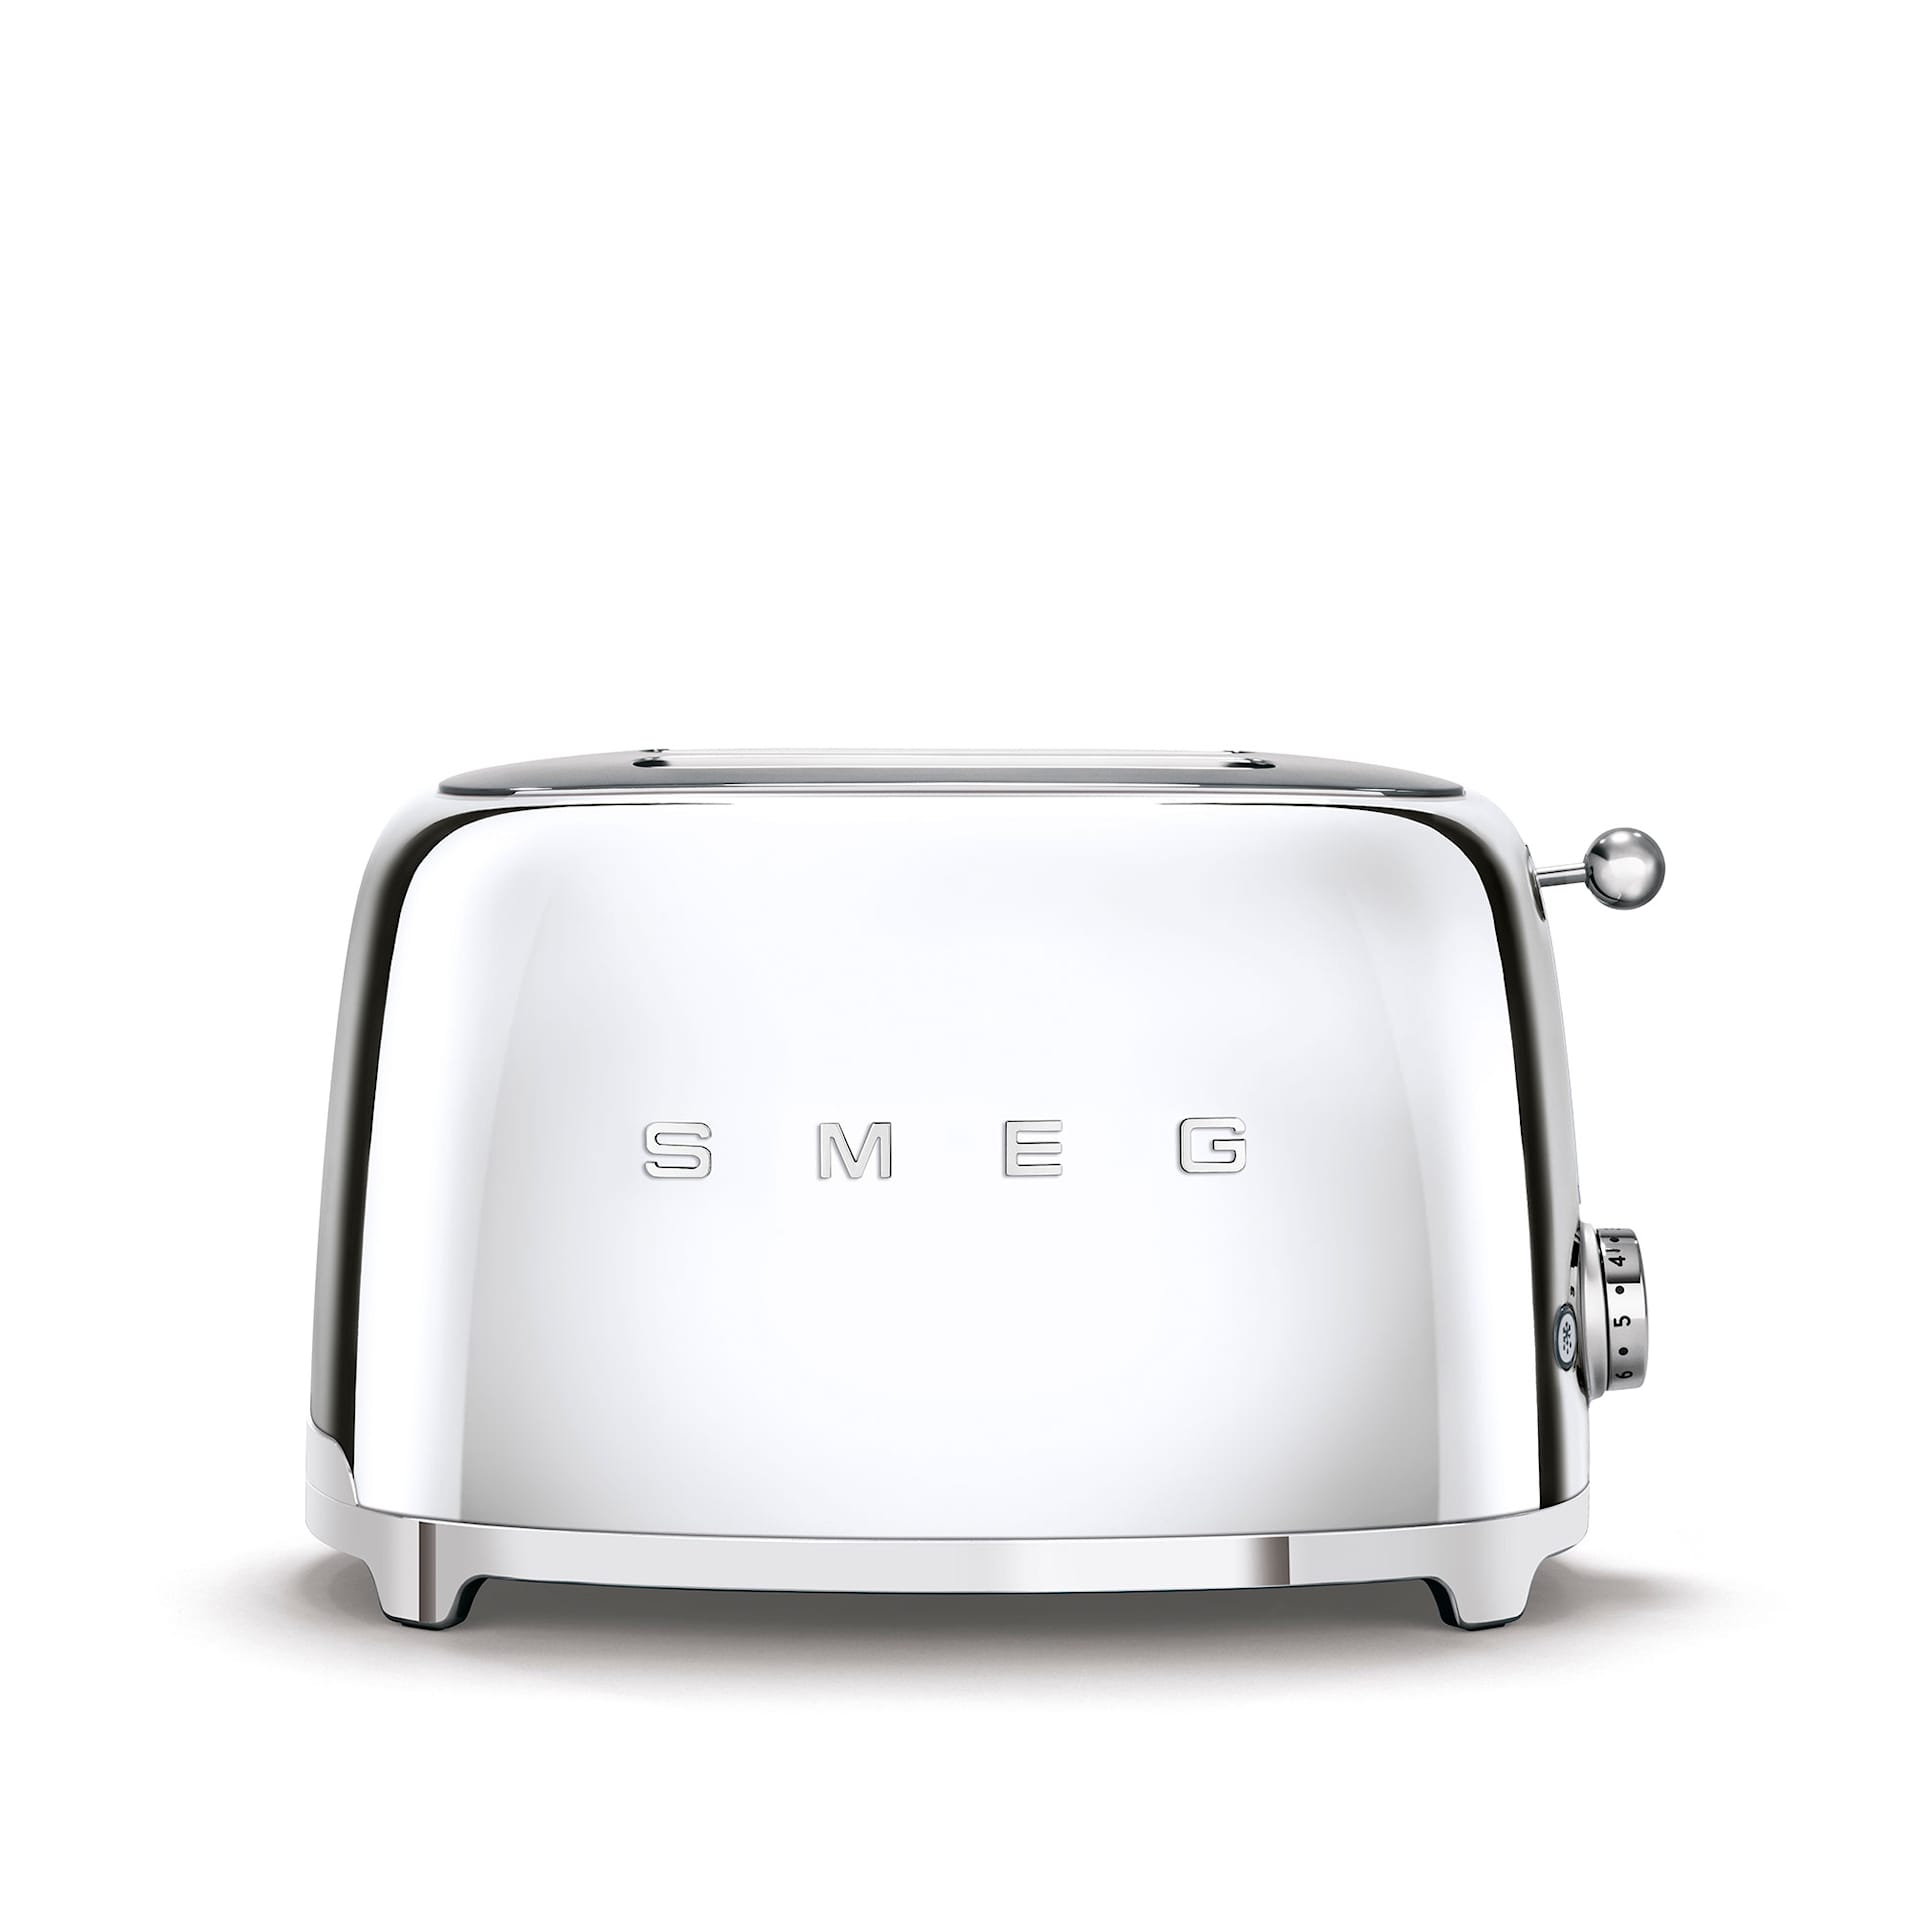 Smeg Toaster 2 Slices Chrome - Smeg - NO GA